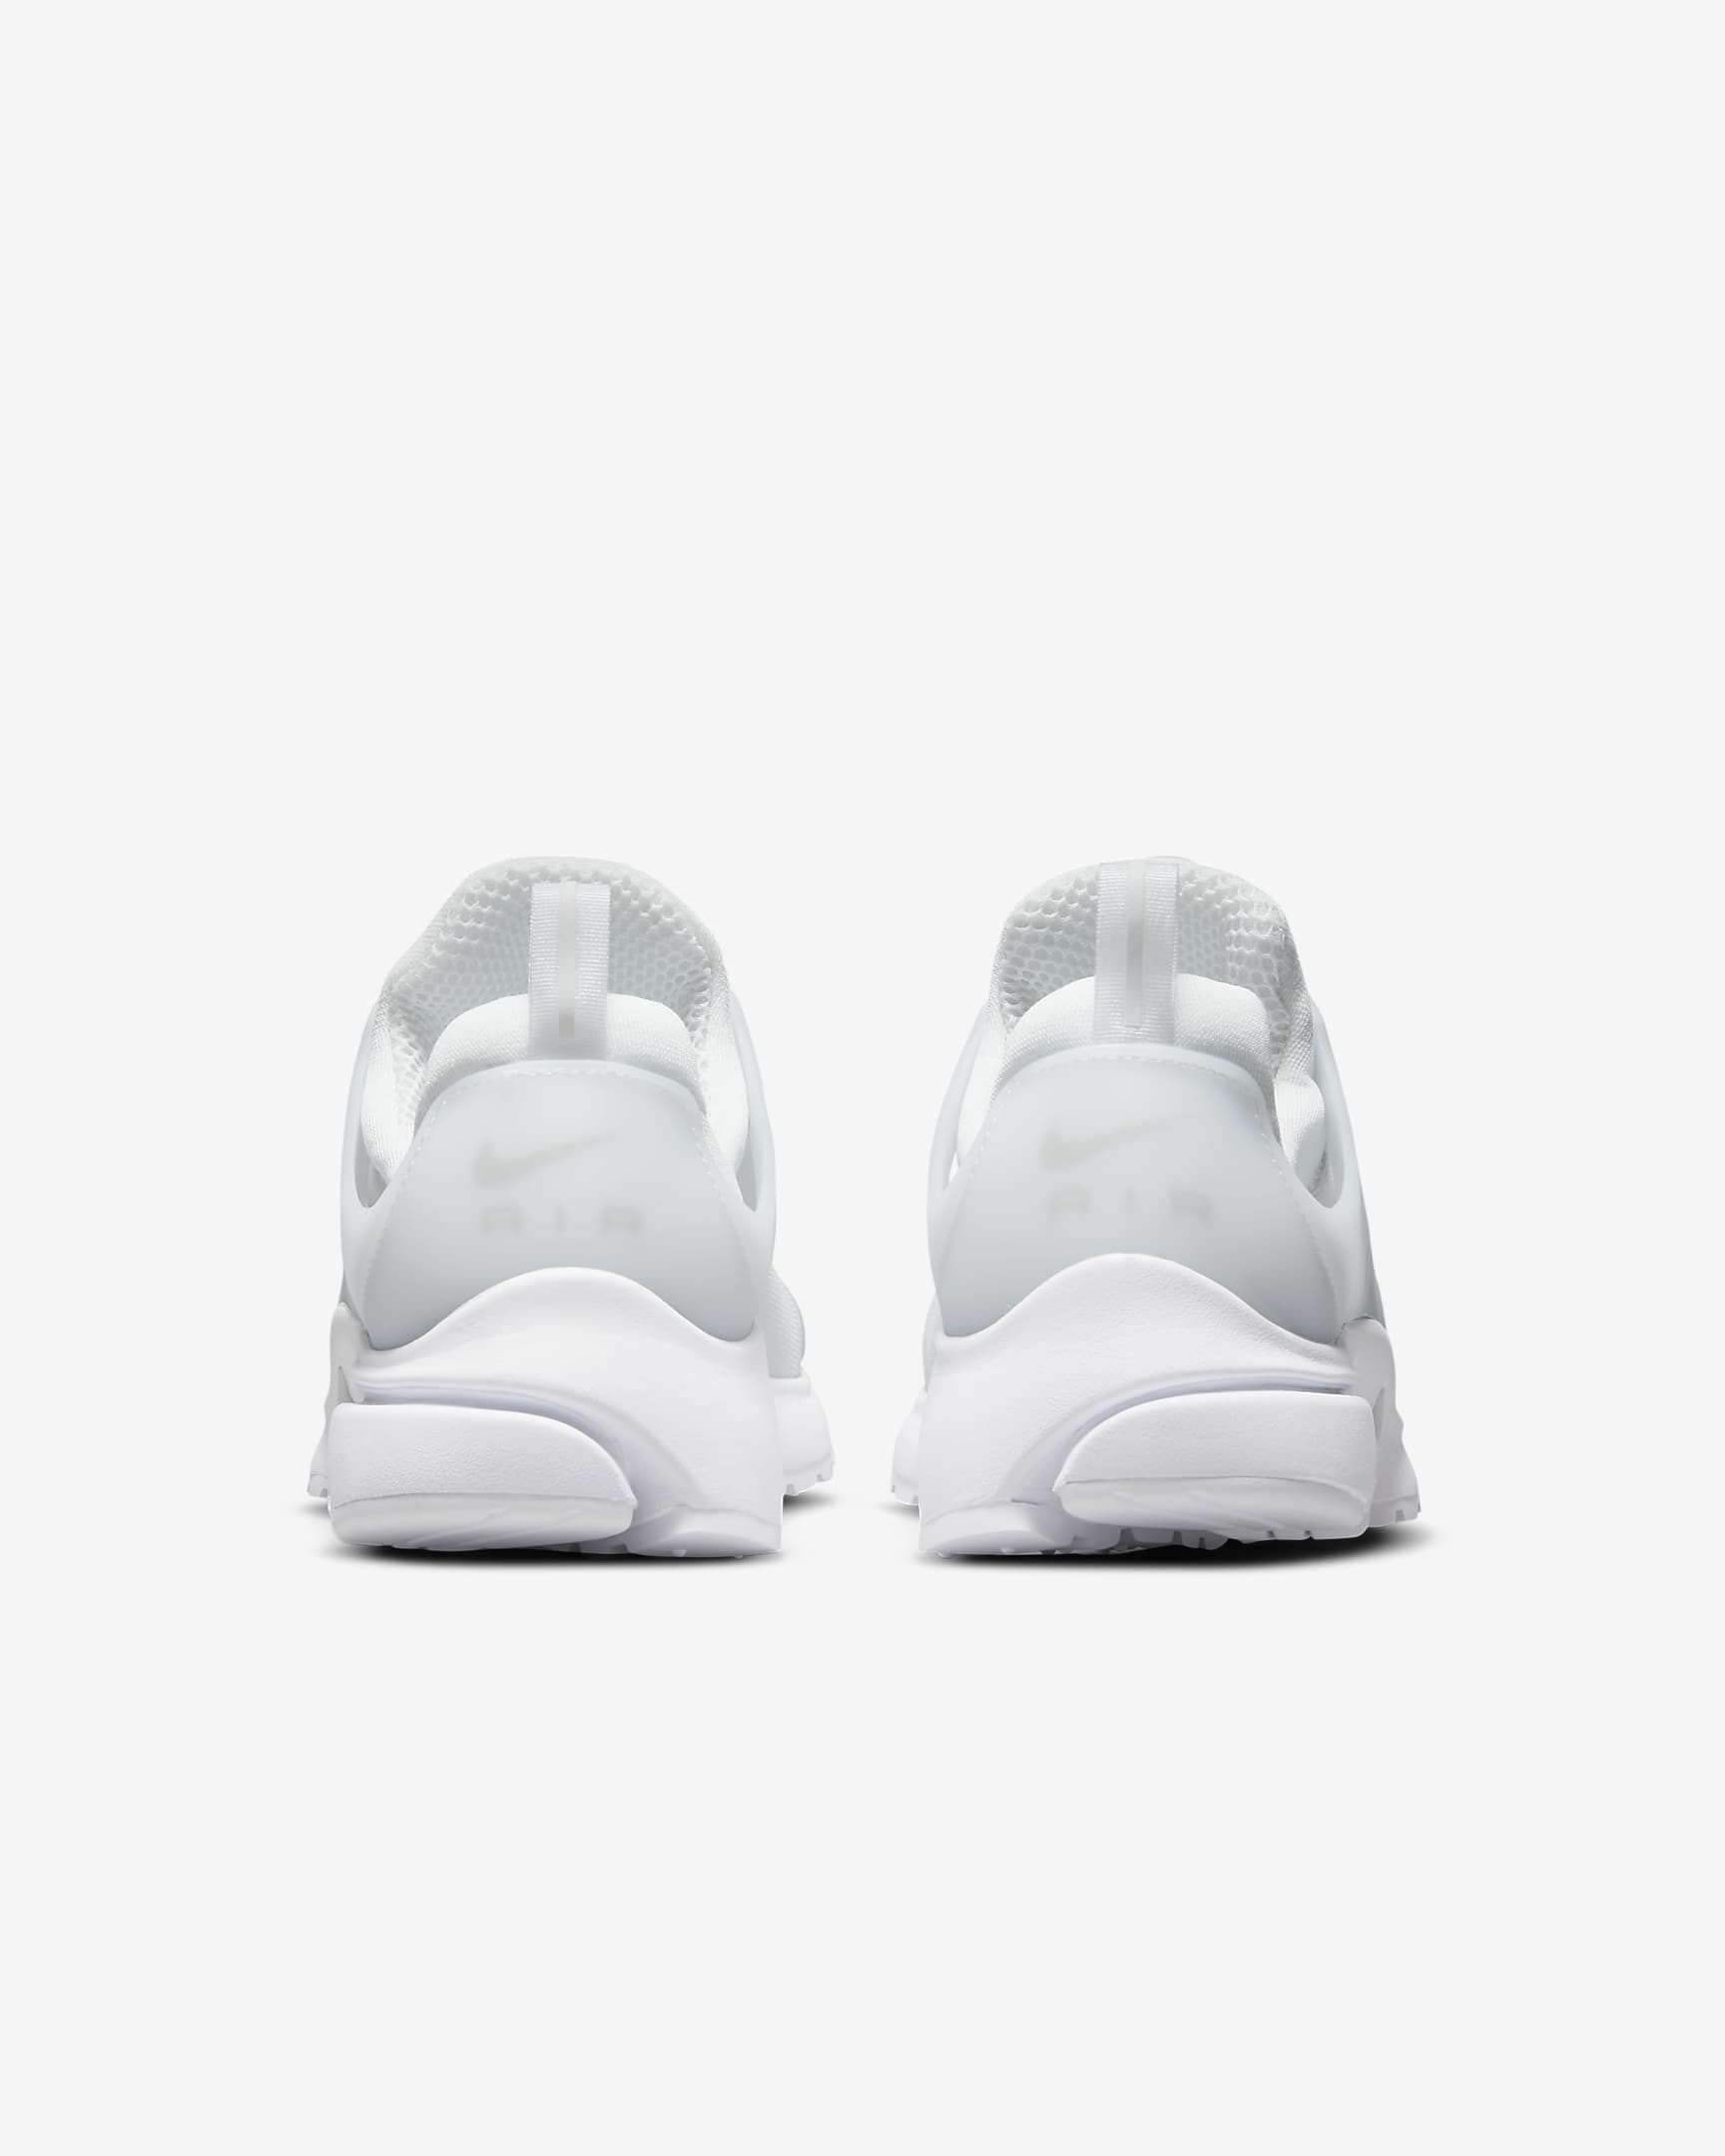 Nike Air Presto Herrenschuh - Weiß/Pure Platinum